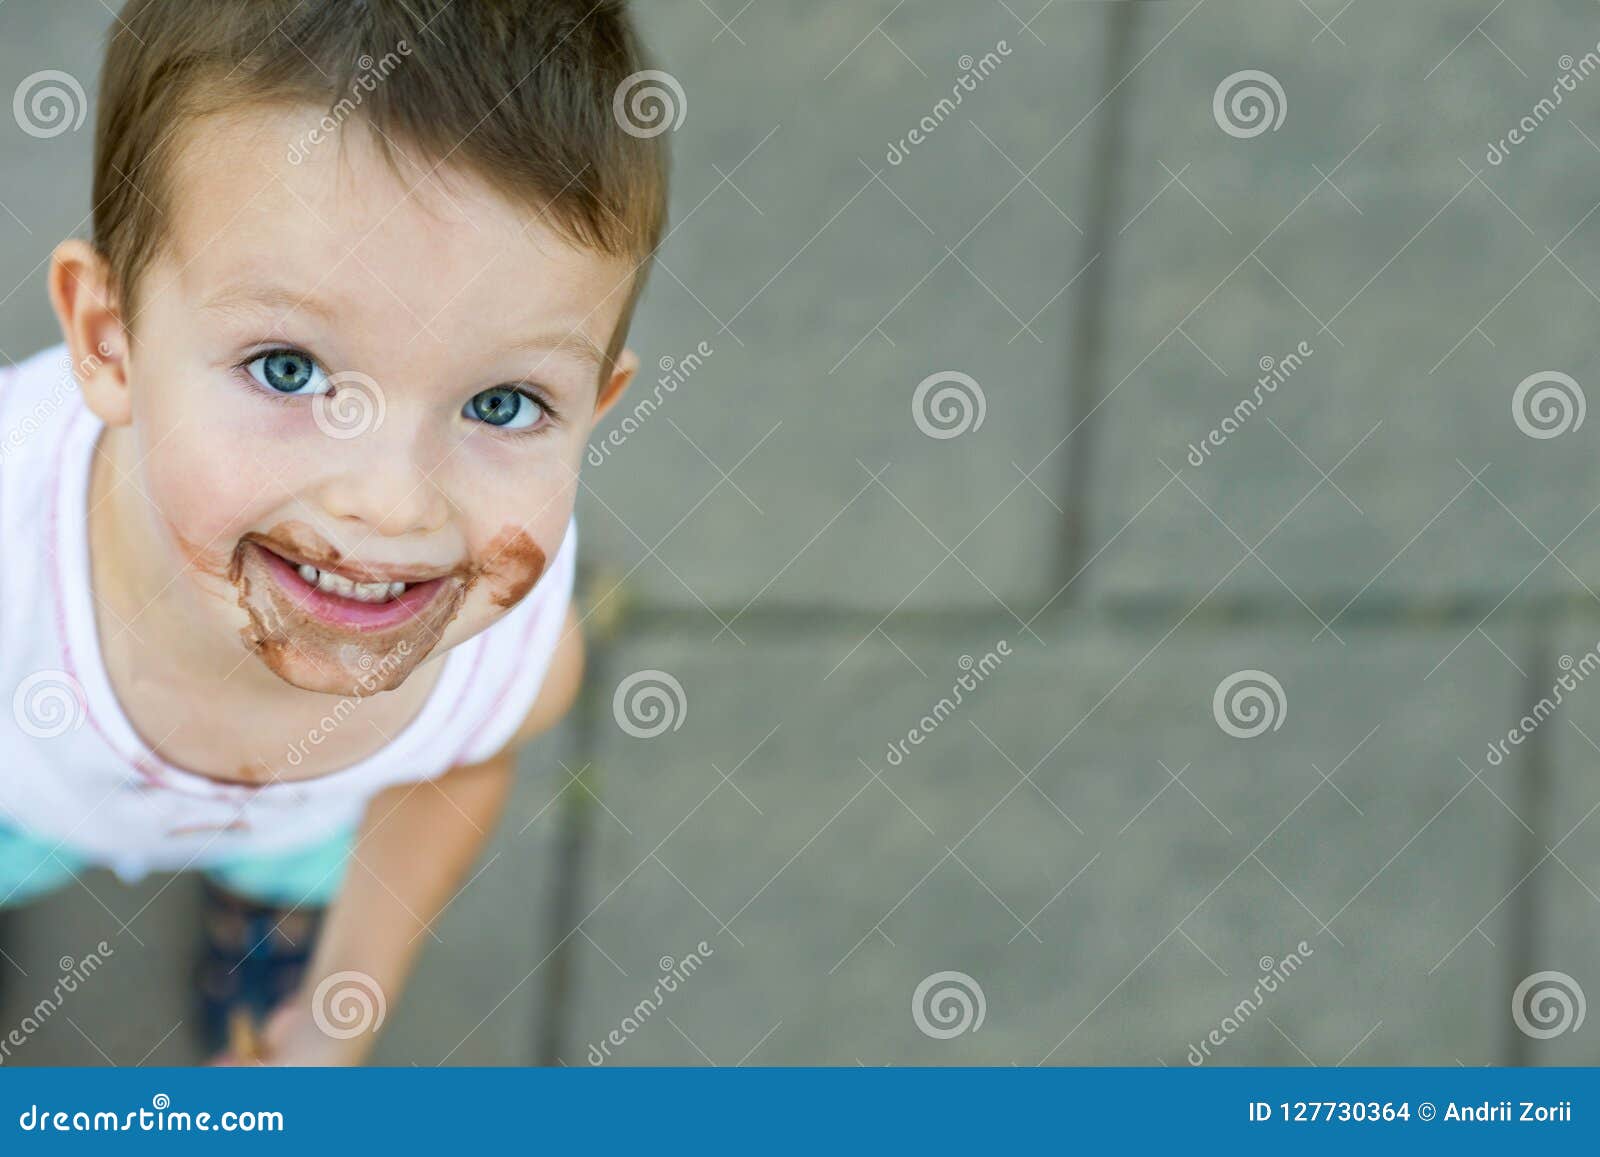 男孩奶油色吃冰少许 库存图片. 图片 包括有 孩子, 锥体, 奶油, 白种人, 人员, 一个, 童年, 子项 - 20443975